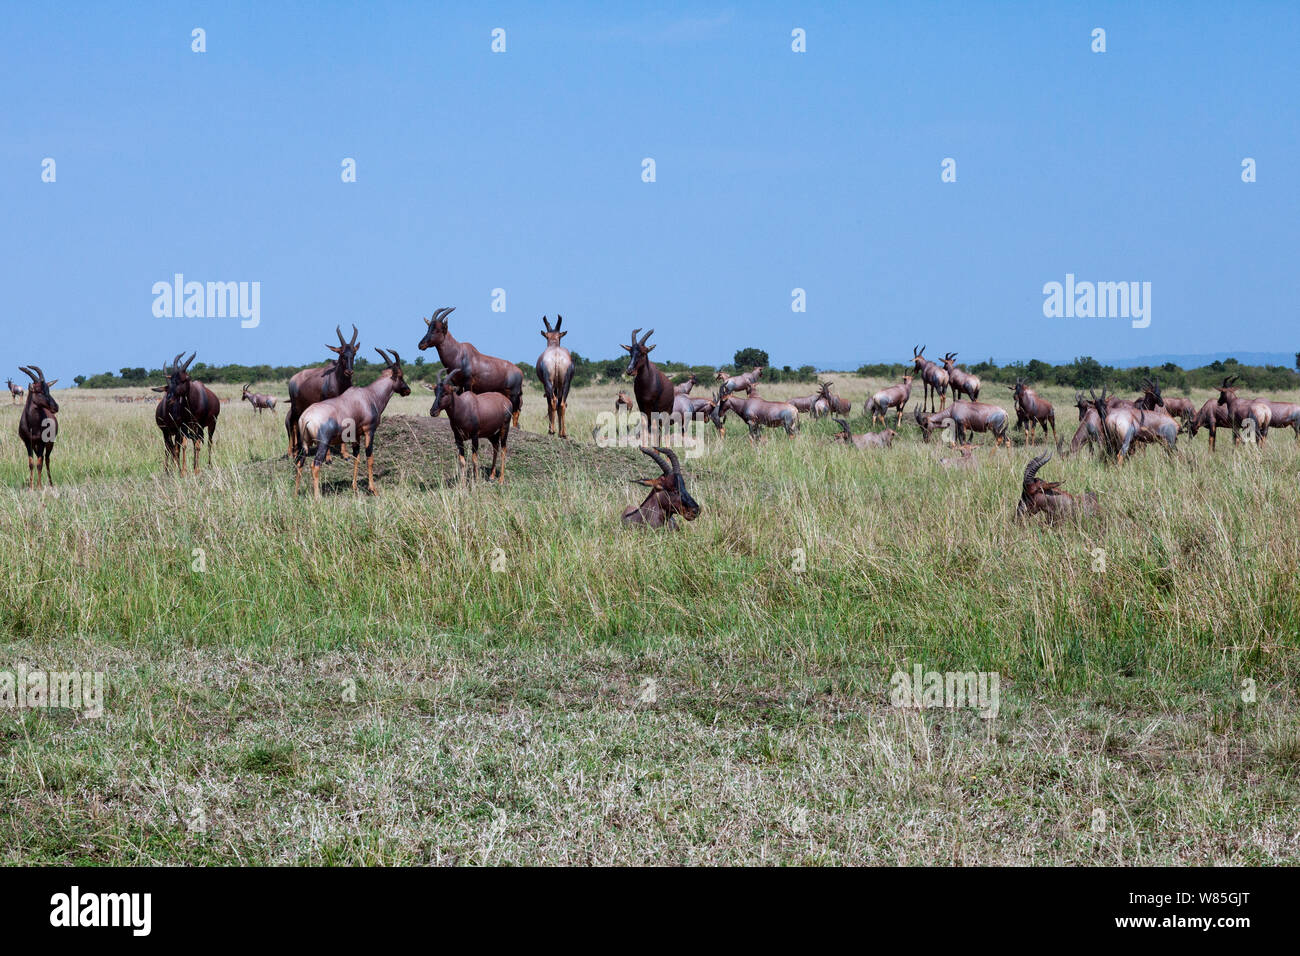 Topi (Damaliscus lunatus) Herde stehen auf grasbewachsenen Ebenen (Damaliscus lunatus). Masai Mara National Reserve, Kenia. Stockfoto